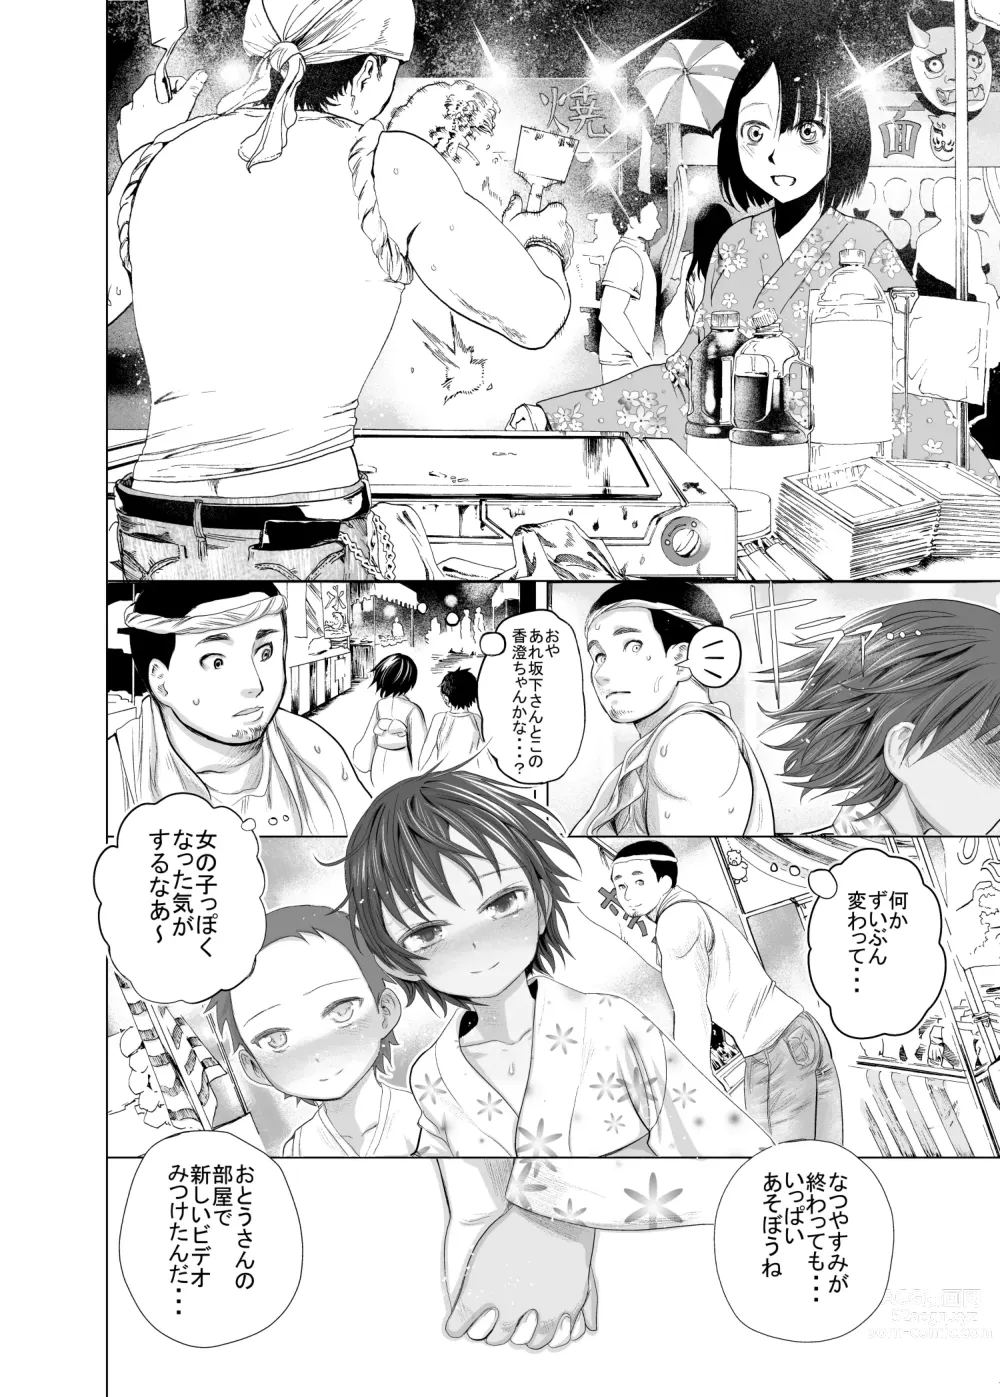 Page 23 of doujinshi Boku-tachi no Natsuyasumi